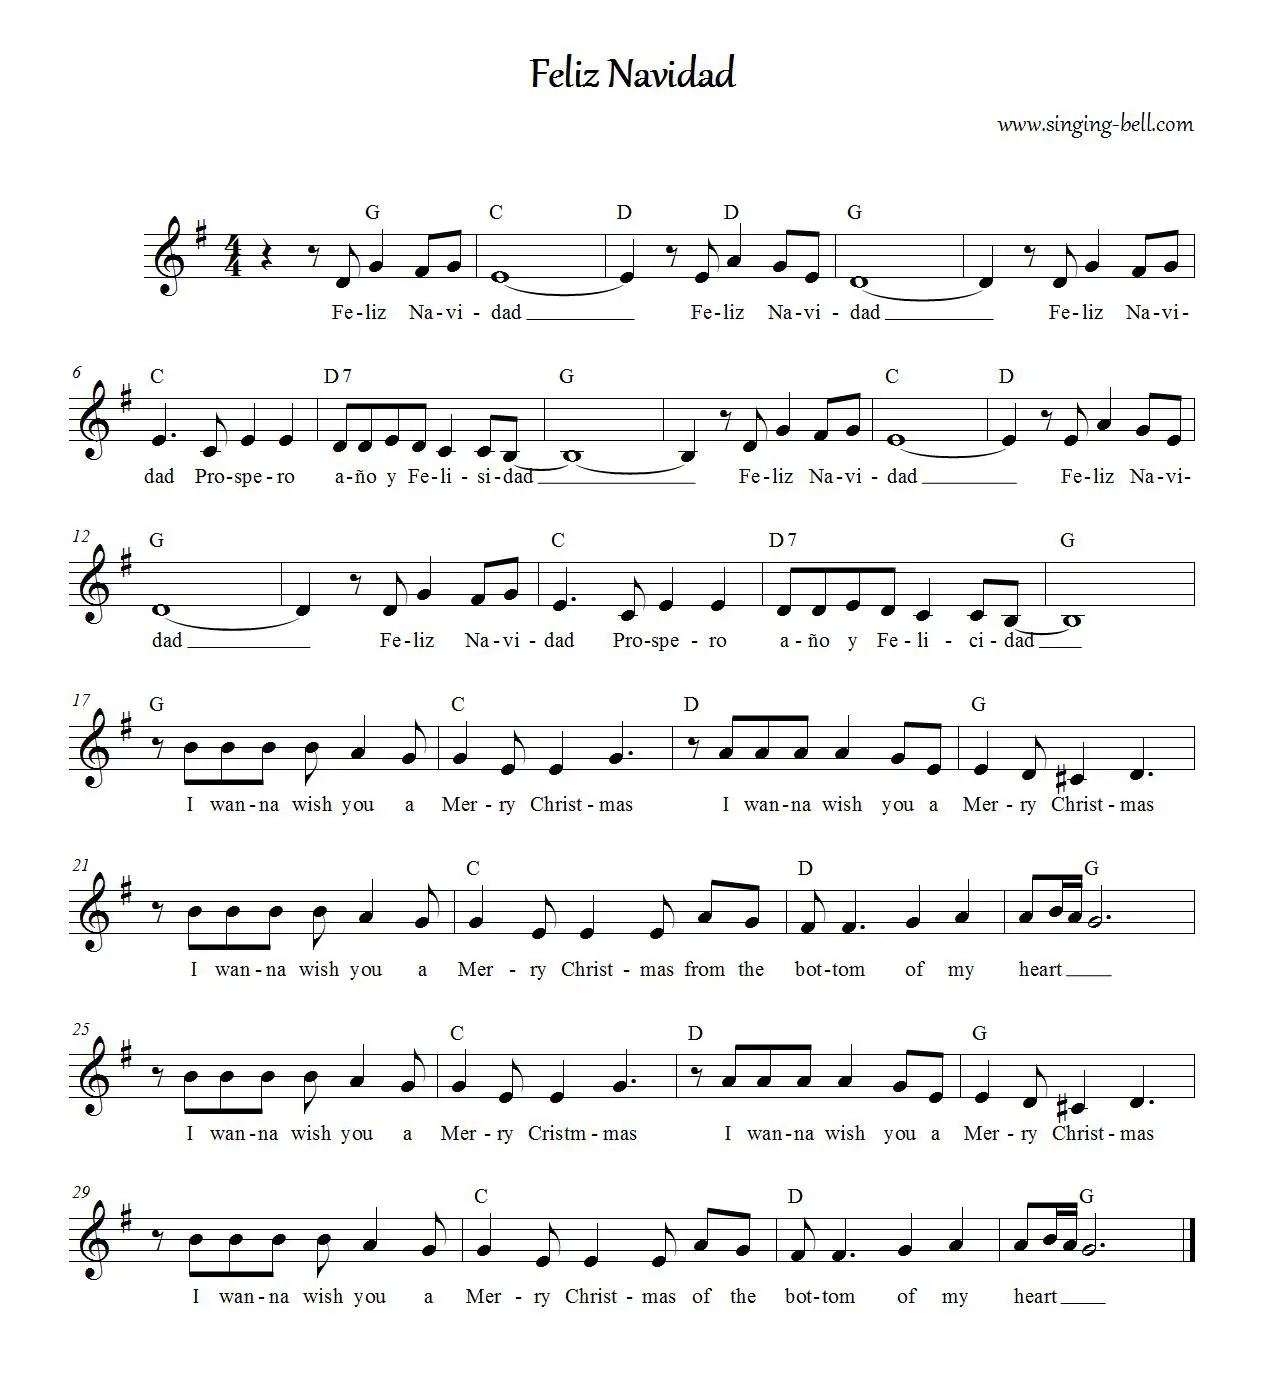 Feliz Navidad - Sheet music with chords in G